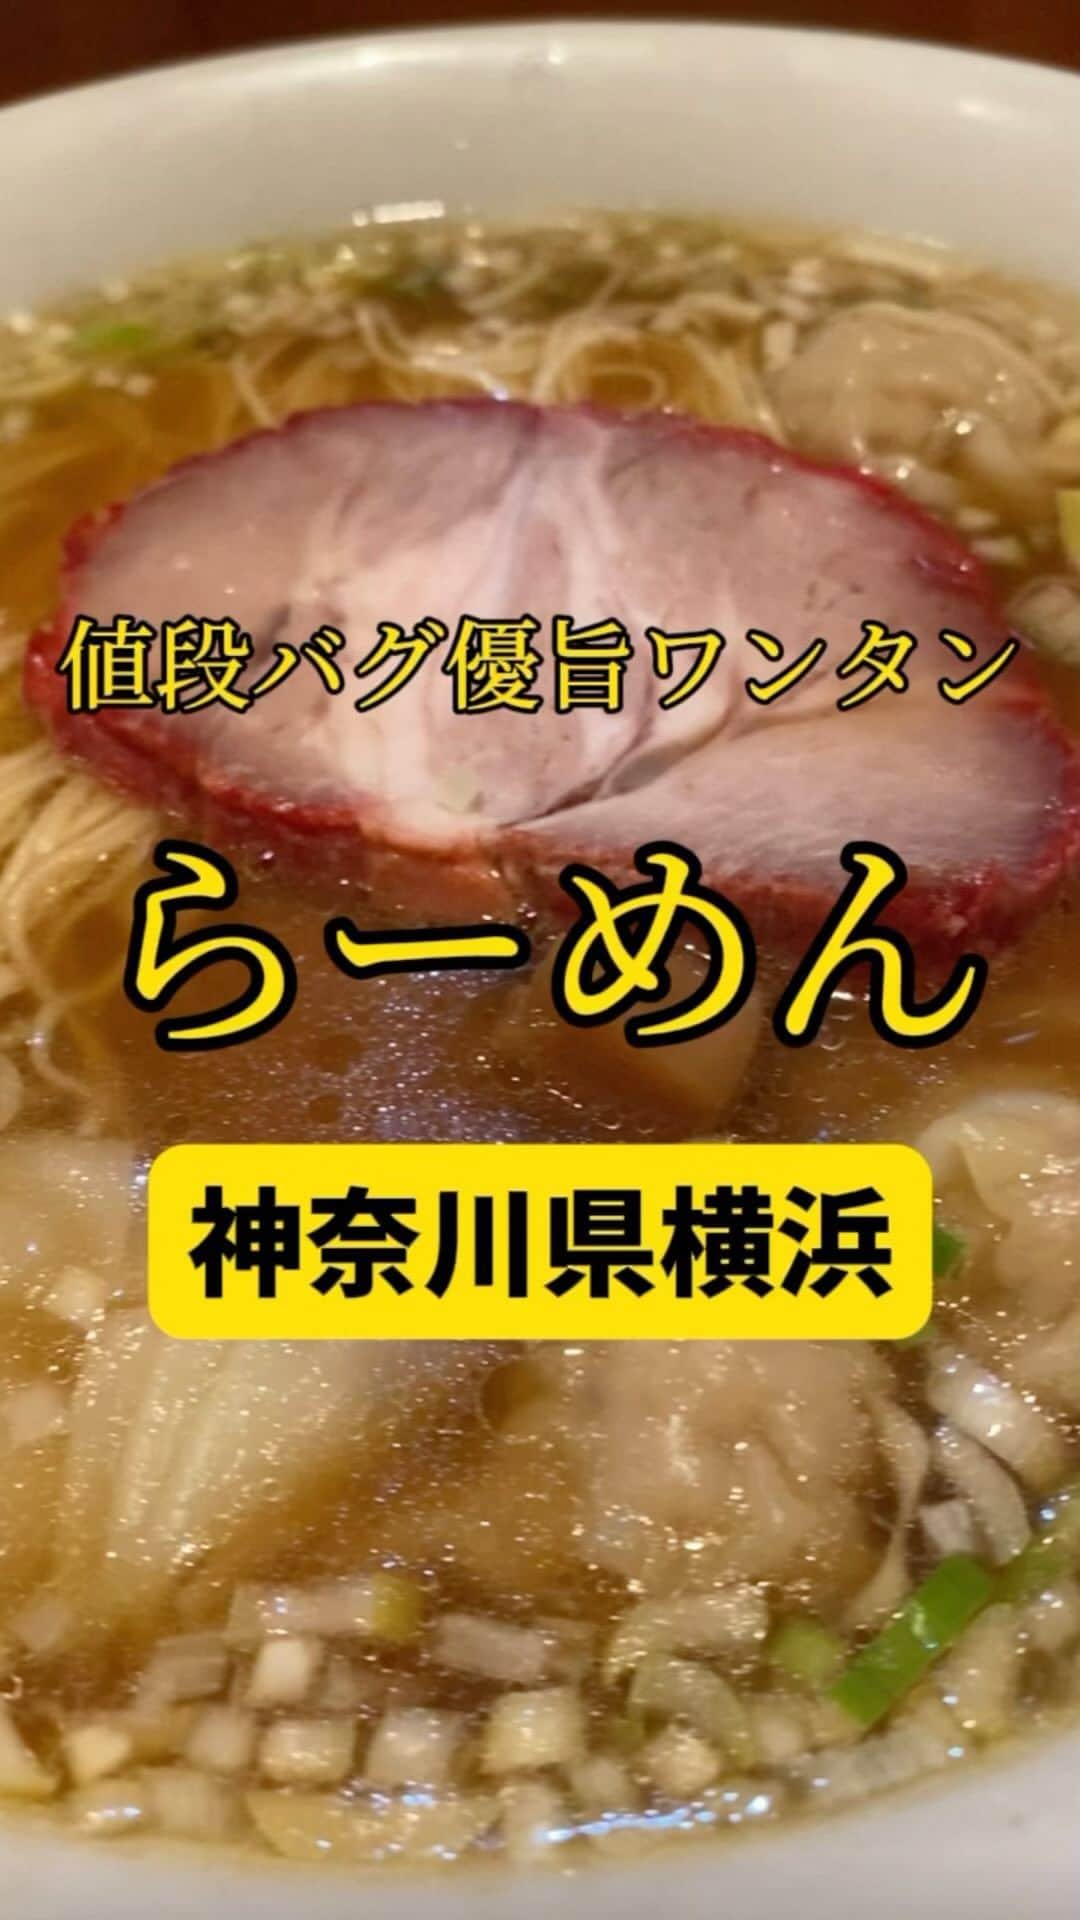 Mr.FISHEYE/魚眼男のインスタグラム：「850円で大満足のワンタン麺🍜これ以上のコスパある❓神奈川/横浜/センター南「ウミガメ食堂」  (美味しいお店など情報をなるべく早めに紹介するので @ryo_onoma をお願いします🙇‍♂️)  このお店の近所に住む友達が「ここ美味い」と教えてくれた。食べログの点数を見て全く期待していなかったがその期待は裏切られた。すごく嬉しかった。こういう体験は稀、だからこそ嬉しかった。醤油スープのラーメンは飛び抜けて美味いみたいなことがあまりない。強い味の刺激がなく印象に残りづらい。細かな差で美味い、普通が分かれているように思う。しかし今このお店に対して醤油スープにおいてもしっかりと美味いという印象を持っている。ほのかに香る生姜だけではない、醤油を抑えるその力が何とも絶妙で物凄く優しさのある美味しさだった。物凄く丁寧な仕事がこの陰にあると思った。そんな丁寧な仕事があるのに850円と、また再びその値段の安さに驚いてしまった。こういう感じで超極細麺に対しても、食べ応えのあるワンタンに対してのポジティブな感想を持っていて、「これで850円はマジであり得ない」と思った。企業努力でできるのか、この値段での提供が。この物価高騰の今。驚きばかりのお店だった。ずっとこの場に残り続けて欲しいし、都内でも食べられるようになって欲しい。東京だとこの1.5倍の値段になってしまうか、それでも十分に食べ行く。  【ウミガメ食堂】 📍神奈川県横浜市都筑区茅ケ崎中央24-12 ライオンズプラザ1F 📲045-508-9204 🈺月、火、木～日、祝日、祝前日: 11:15～15:00、17:00〜20:00 定休日:水曜日 🚶‍♂️センター南駅から379m 🗒️頼んだメニュー：ワンタン麺  #神奈川グルメ #神奈川ランチ #神奈川ラーメン #横浜グルメ #横浜ランチ #センター南 #ラーメン #ラーメン屋 #中華料理店 #ラーメン部 #ラーメン倶楽部 #ラーメンパトロール #ラーメン大好き #ラーメン好き #ラーメン好きな人と繋がりたい #ワンタン #ワンタン麺 #ラーメン #ラーメン部 #らーめん好きな人と繋がりたい #醤油ラーメン」